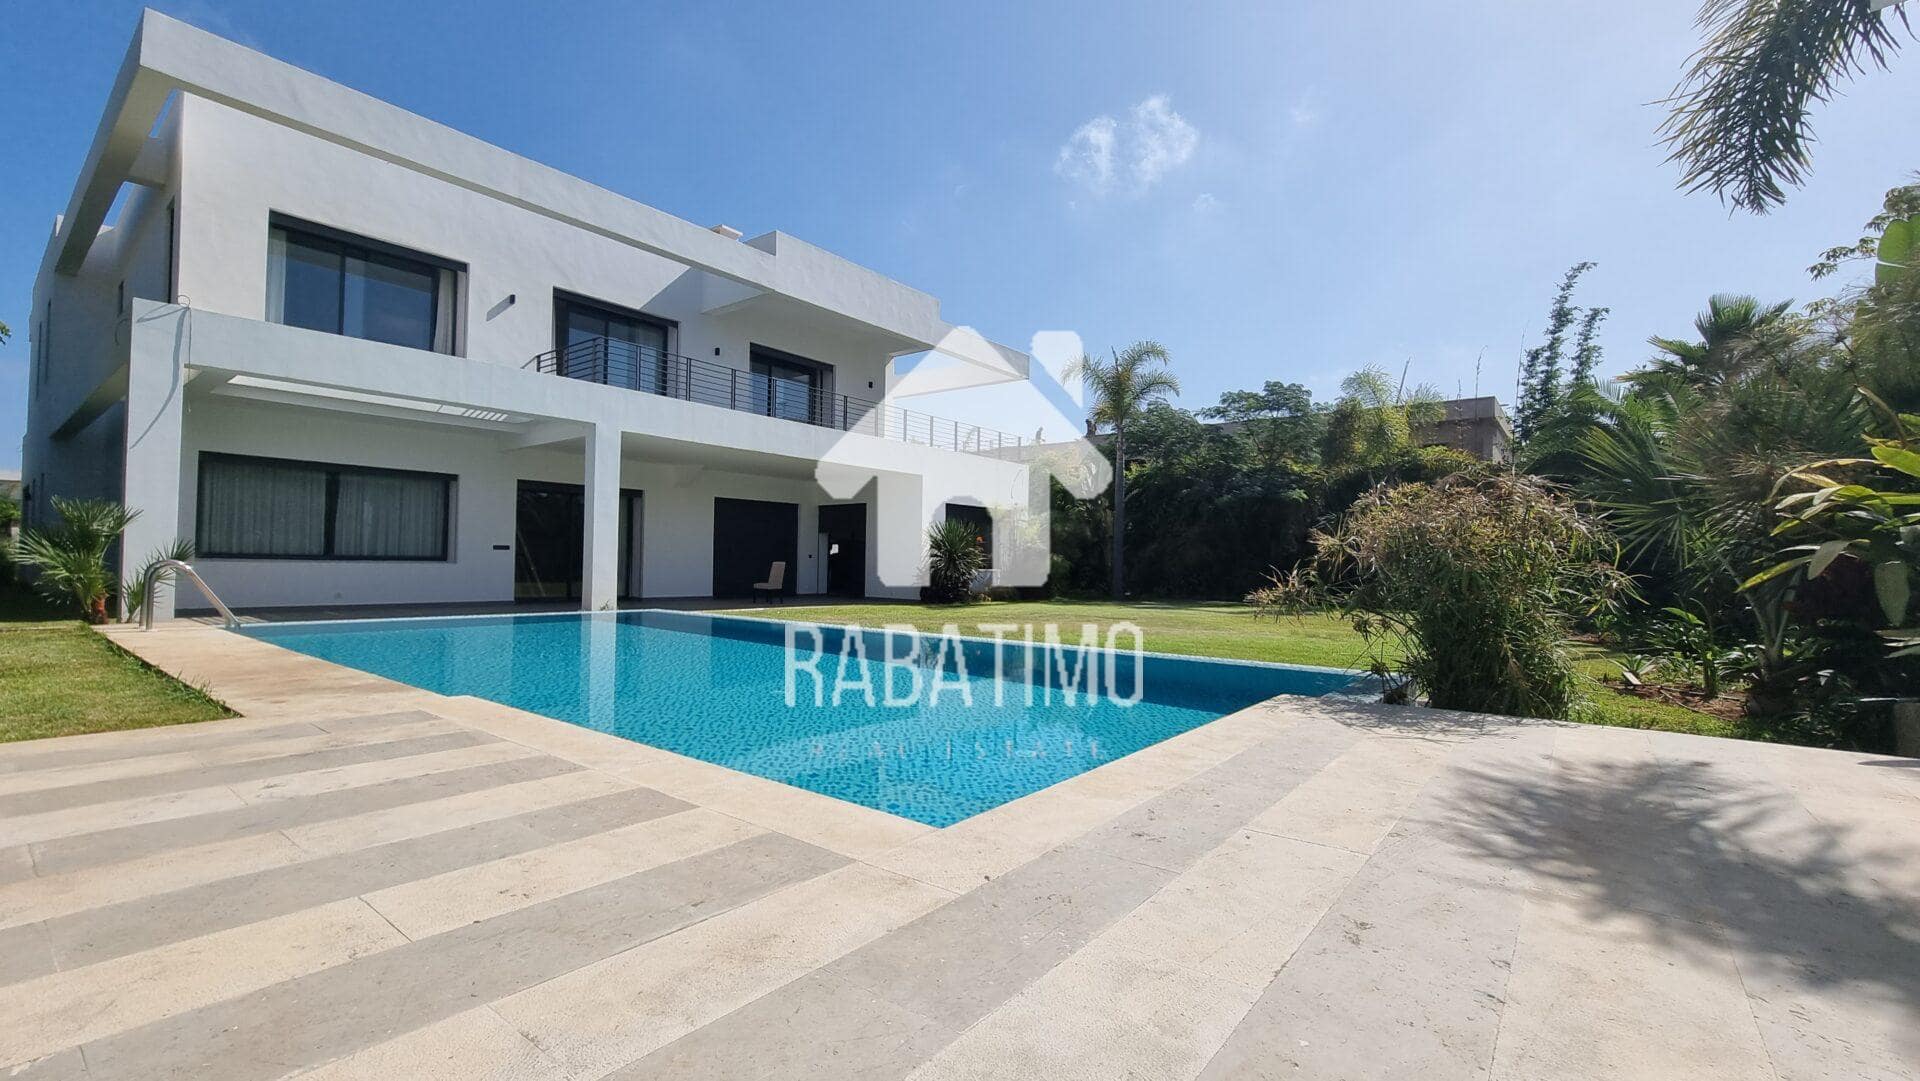 location villa Rabat Souissi chauffage piscine